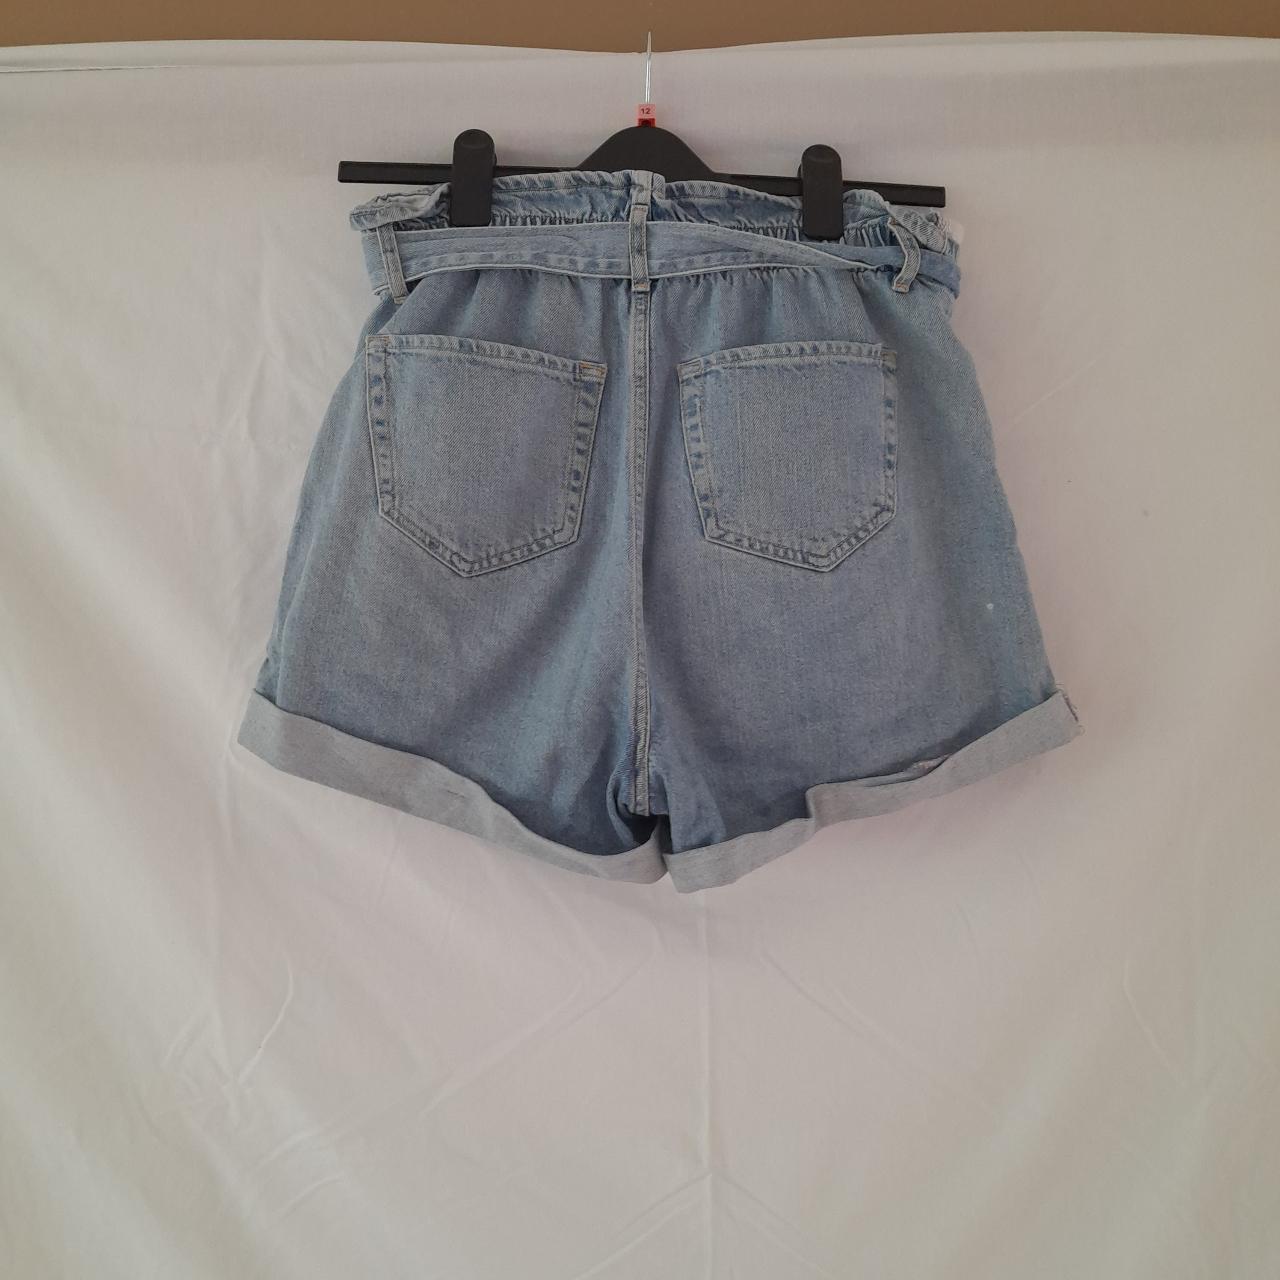 Denim paperbag style shorts, light wash - Depop